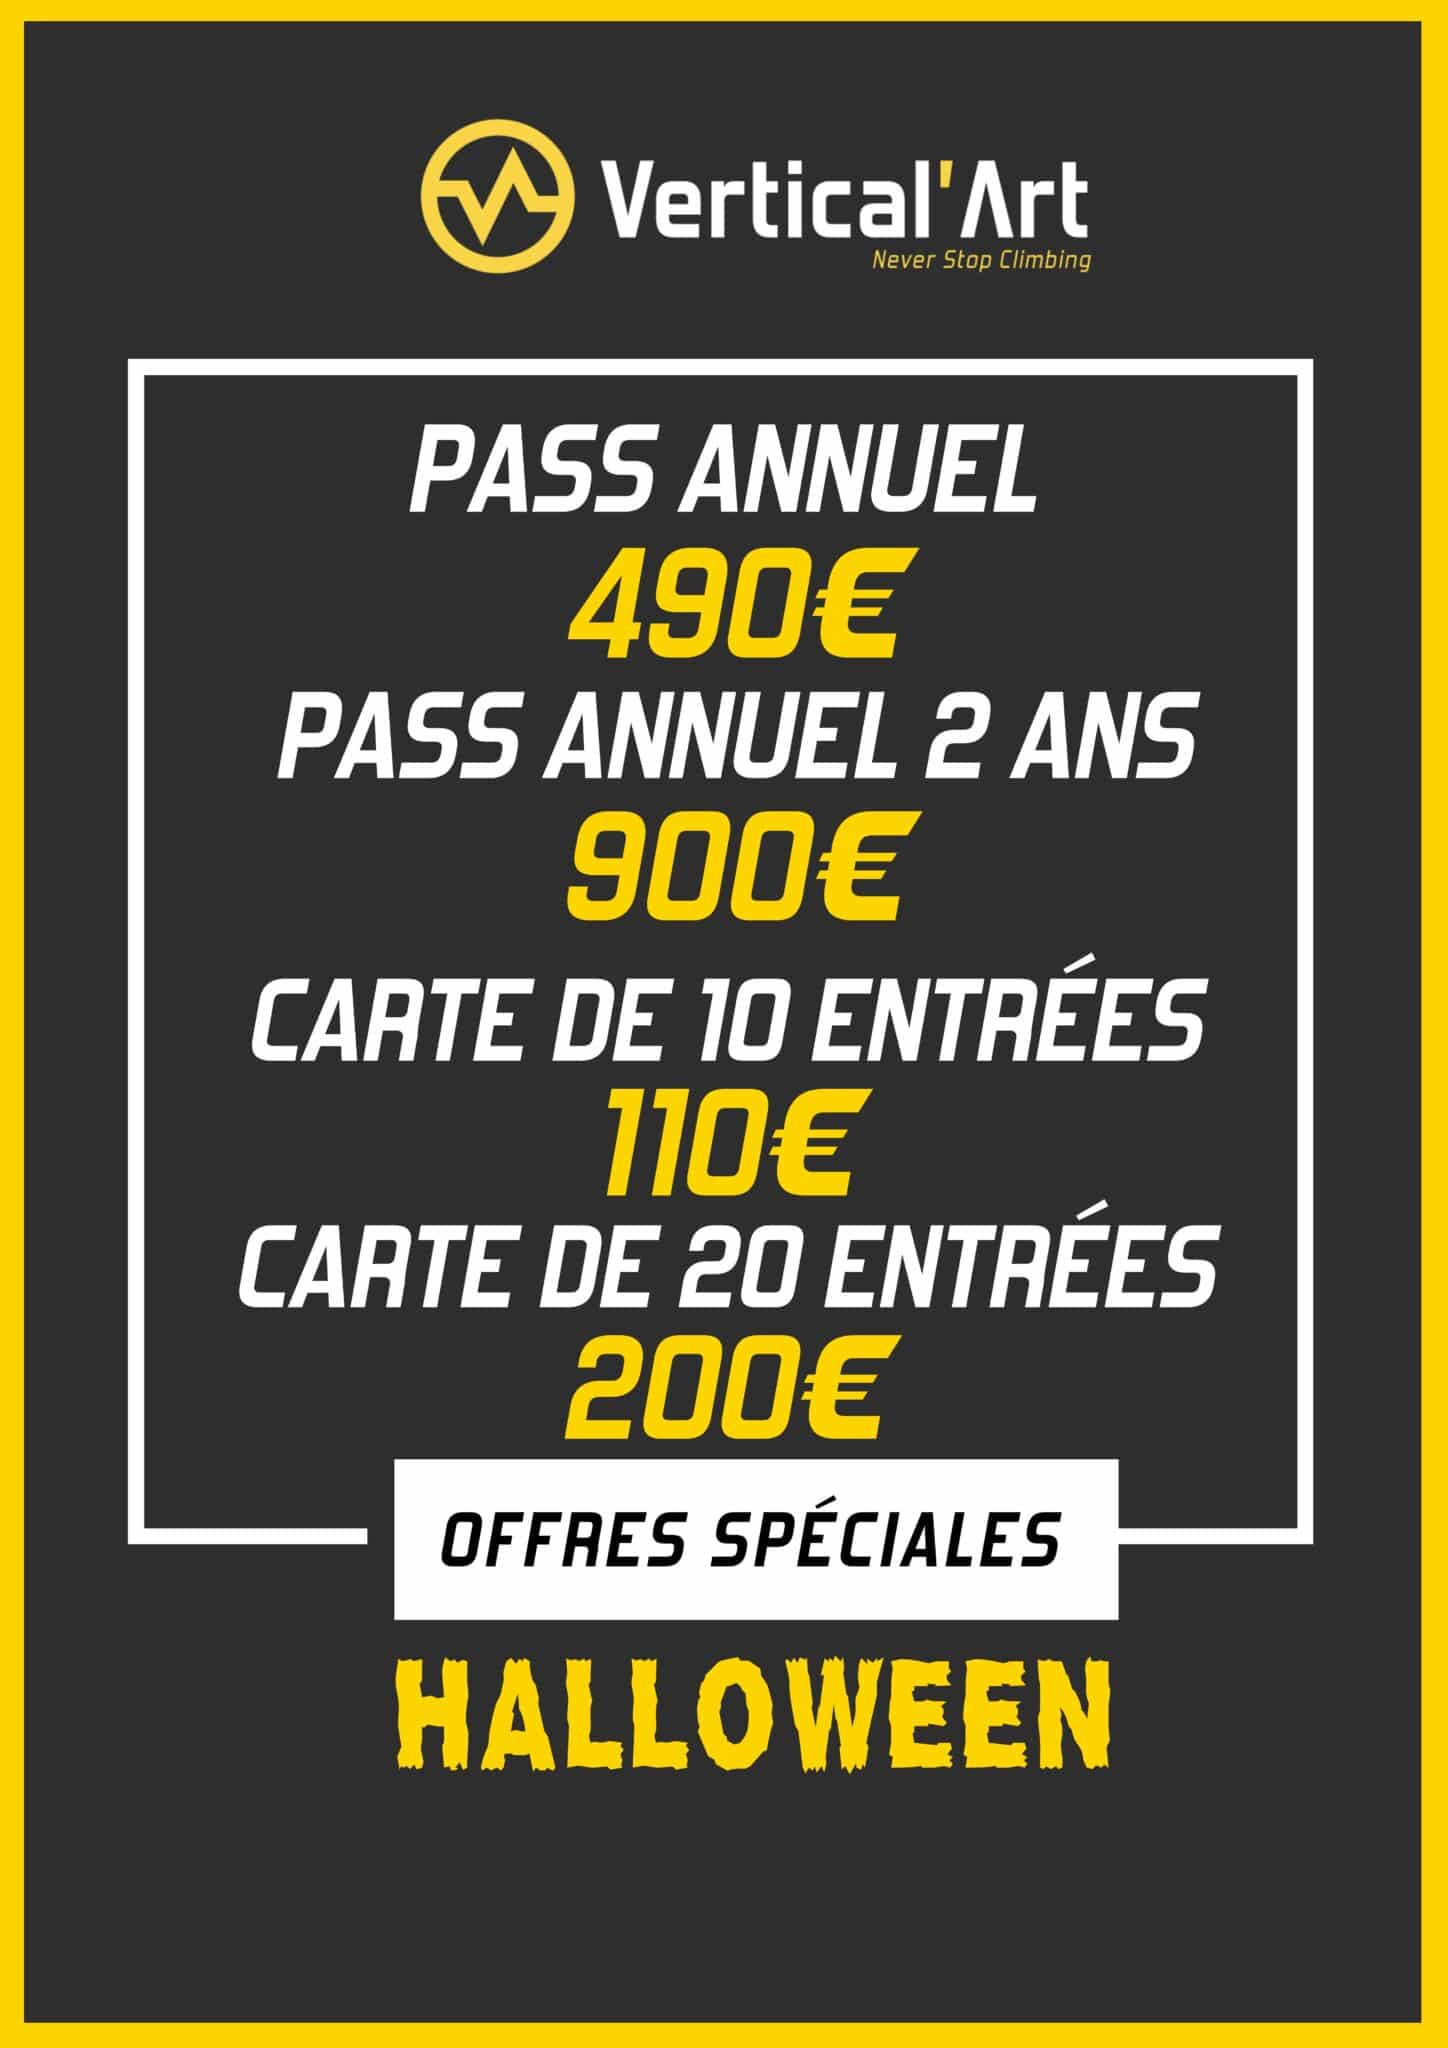 Offres Monstres Halloween à Vertical'Art Lyon du 21 au 31 octobre